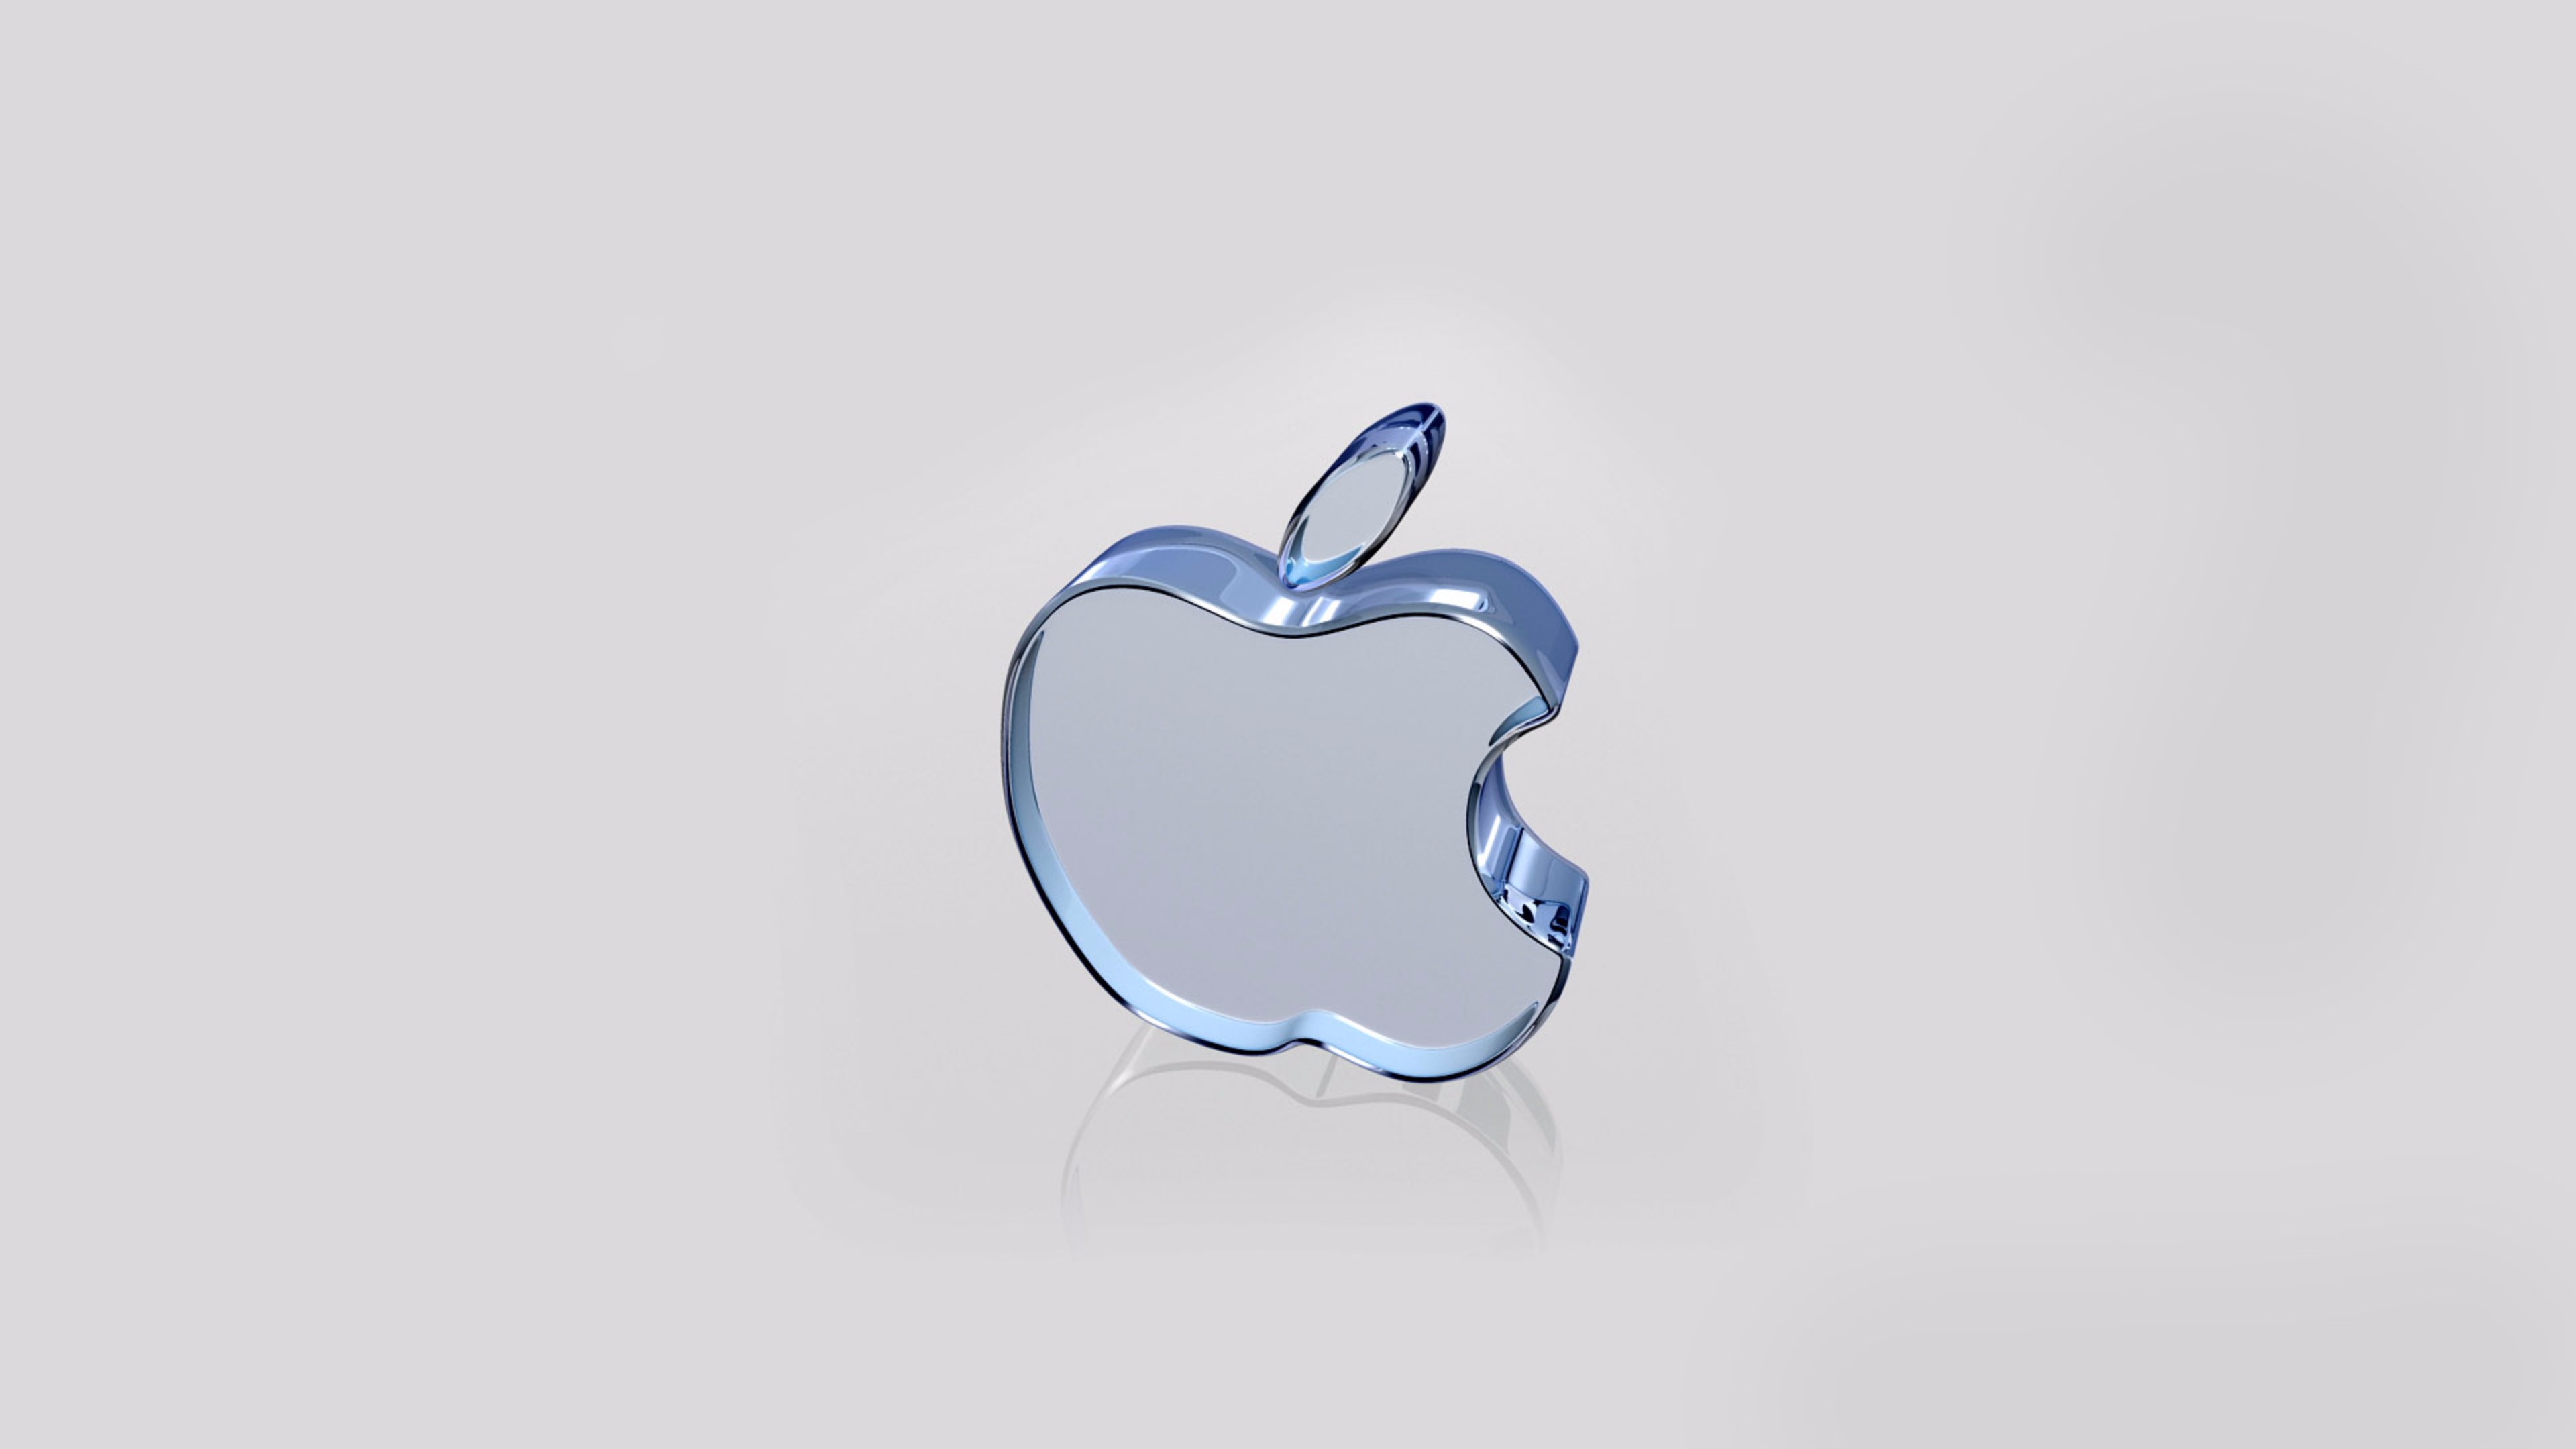 Apple, Firmenzeichen, Äpfeln, Blau, Herzen. Wallpaper in 3840x2160 Resolution